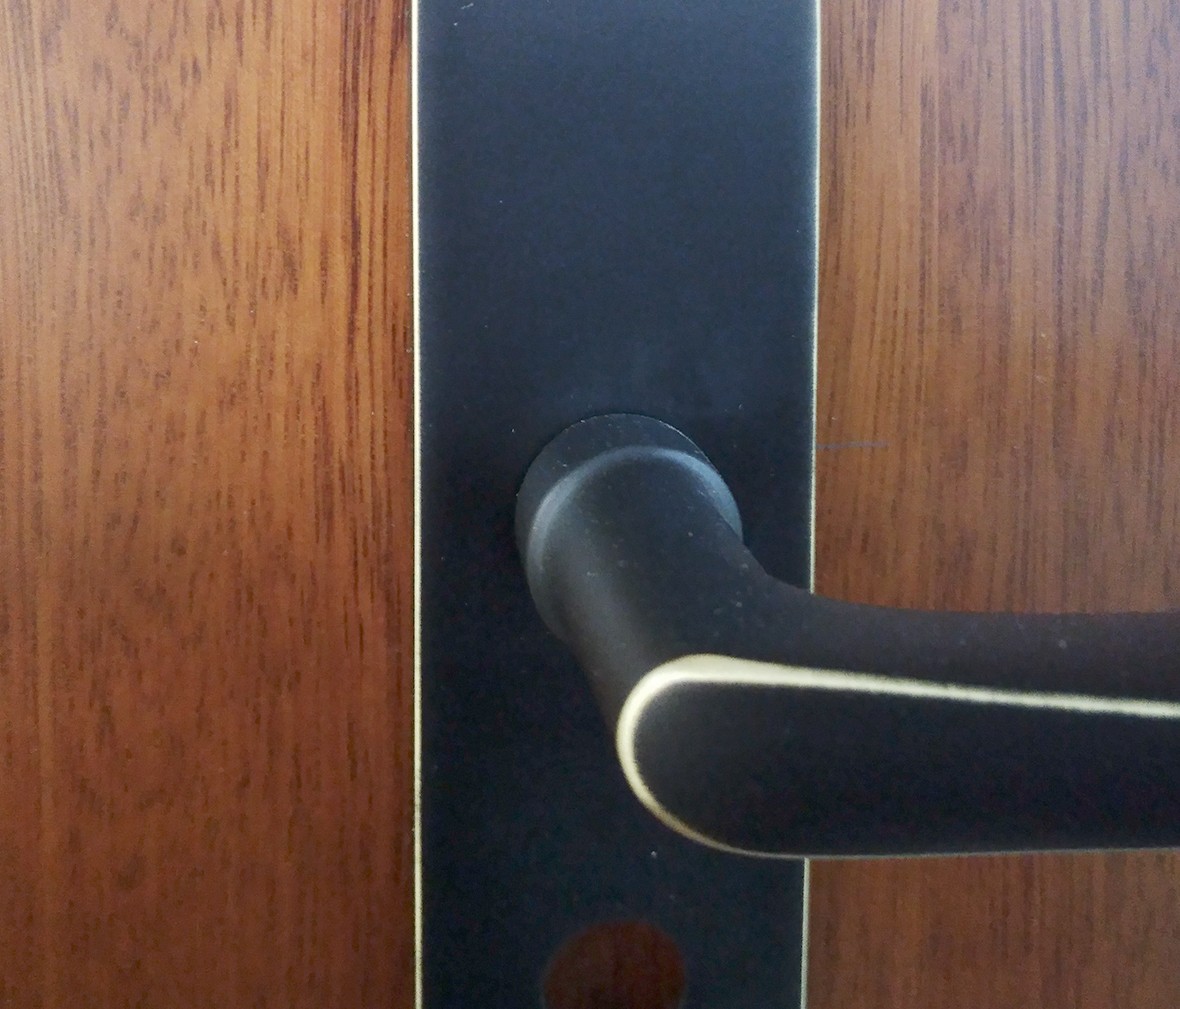 晾霸五金 米开朗620-22型号门锁 铜材质 优质门锁 情景 细节